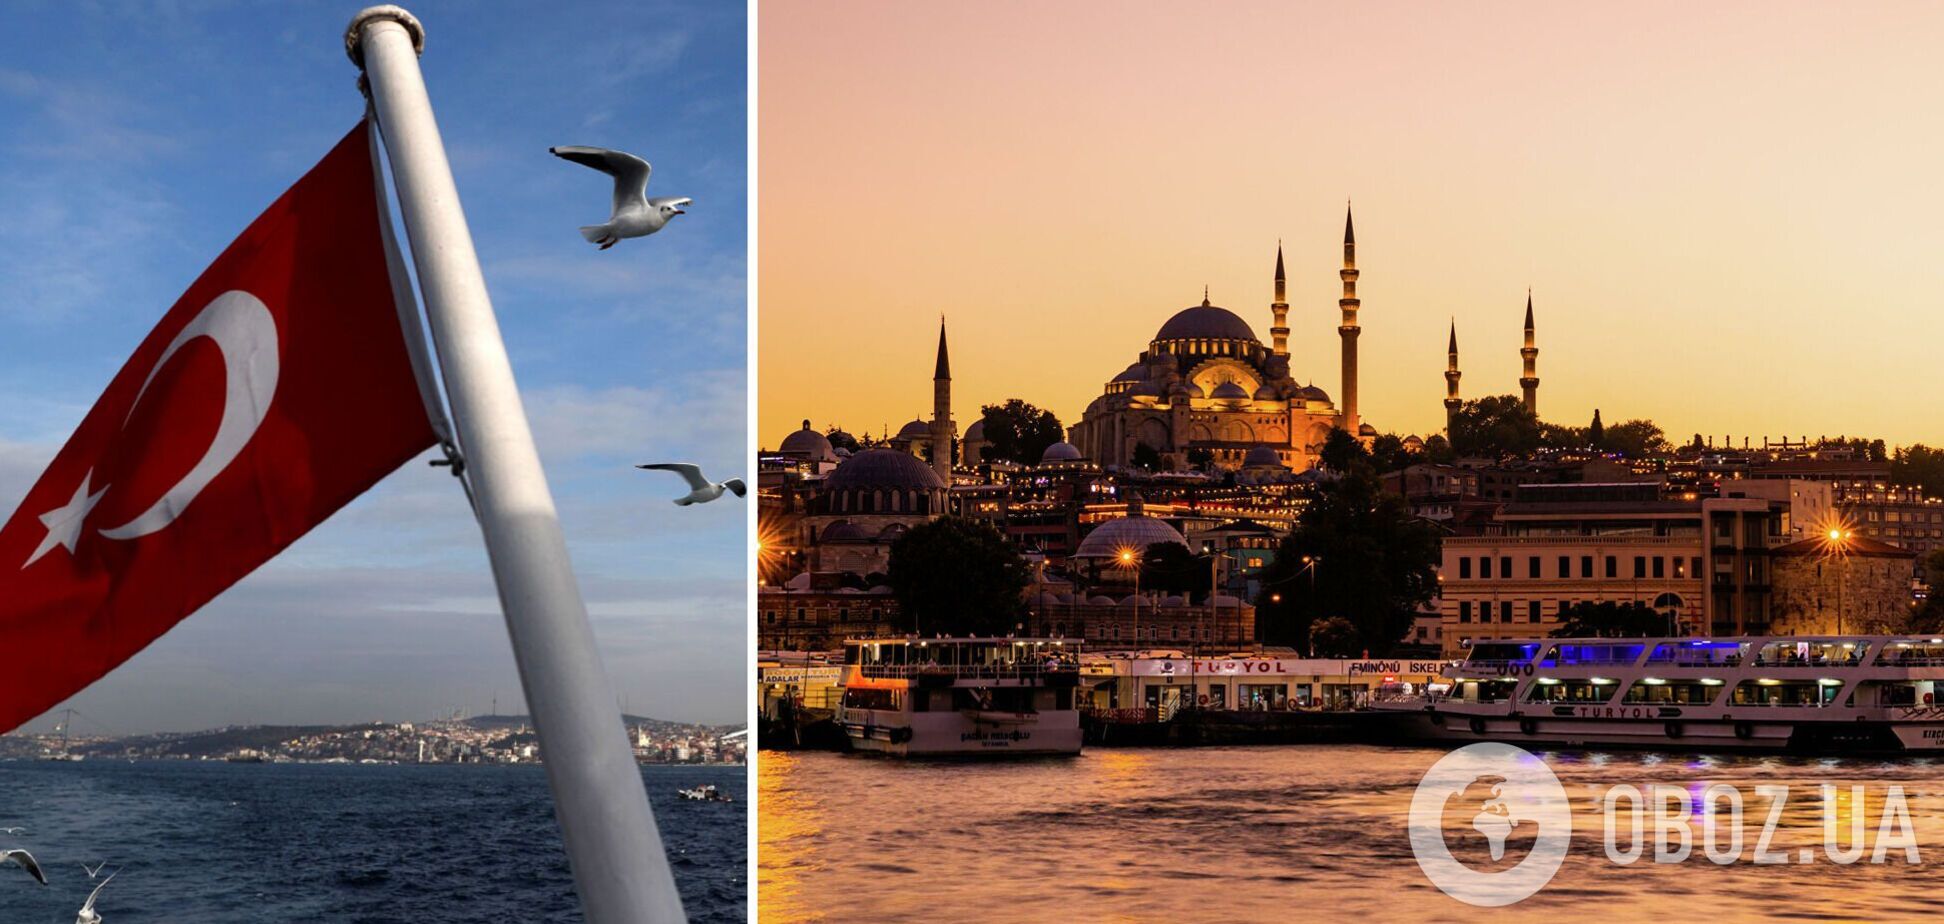 Чи зміняться ціни на відпочинок у Туреччині після заборони польотів із РФ: експерти дали відповідь